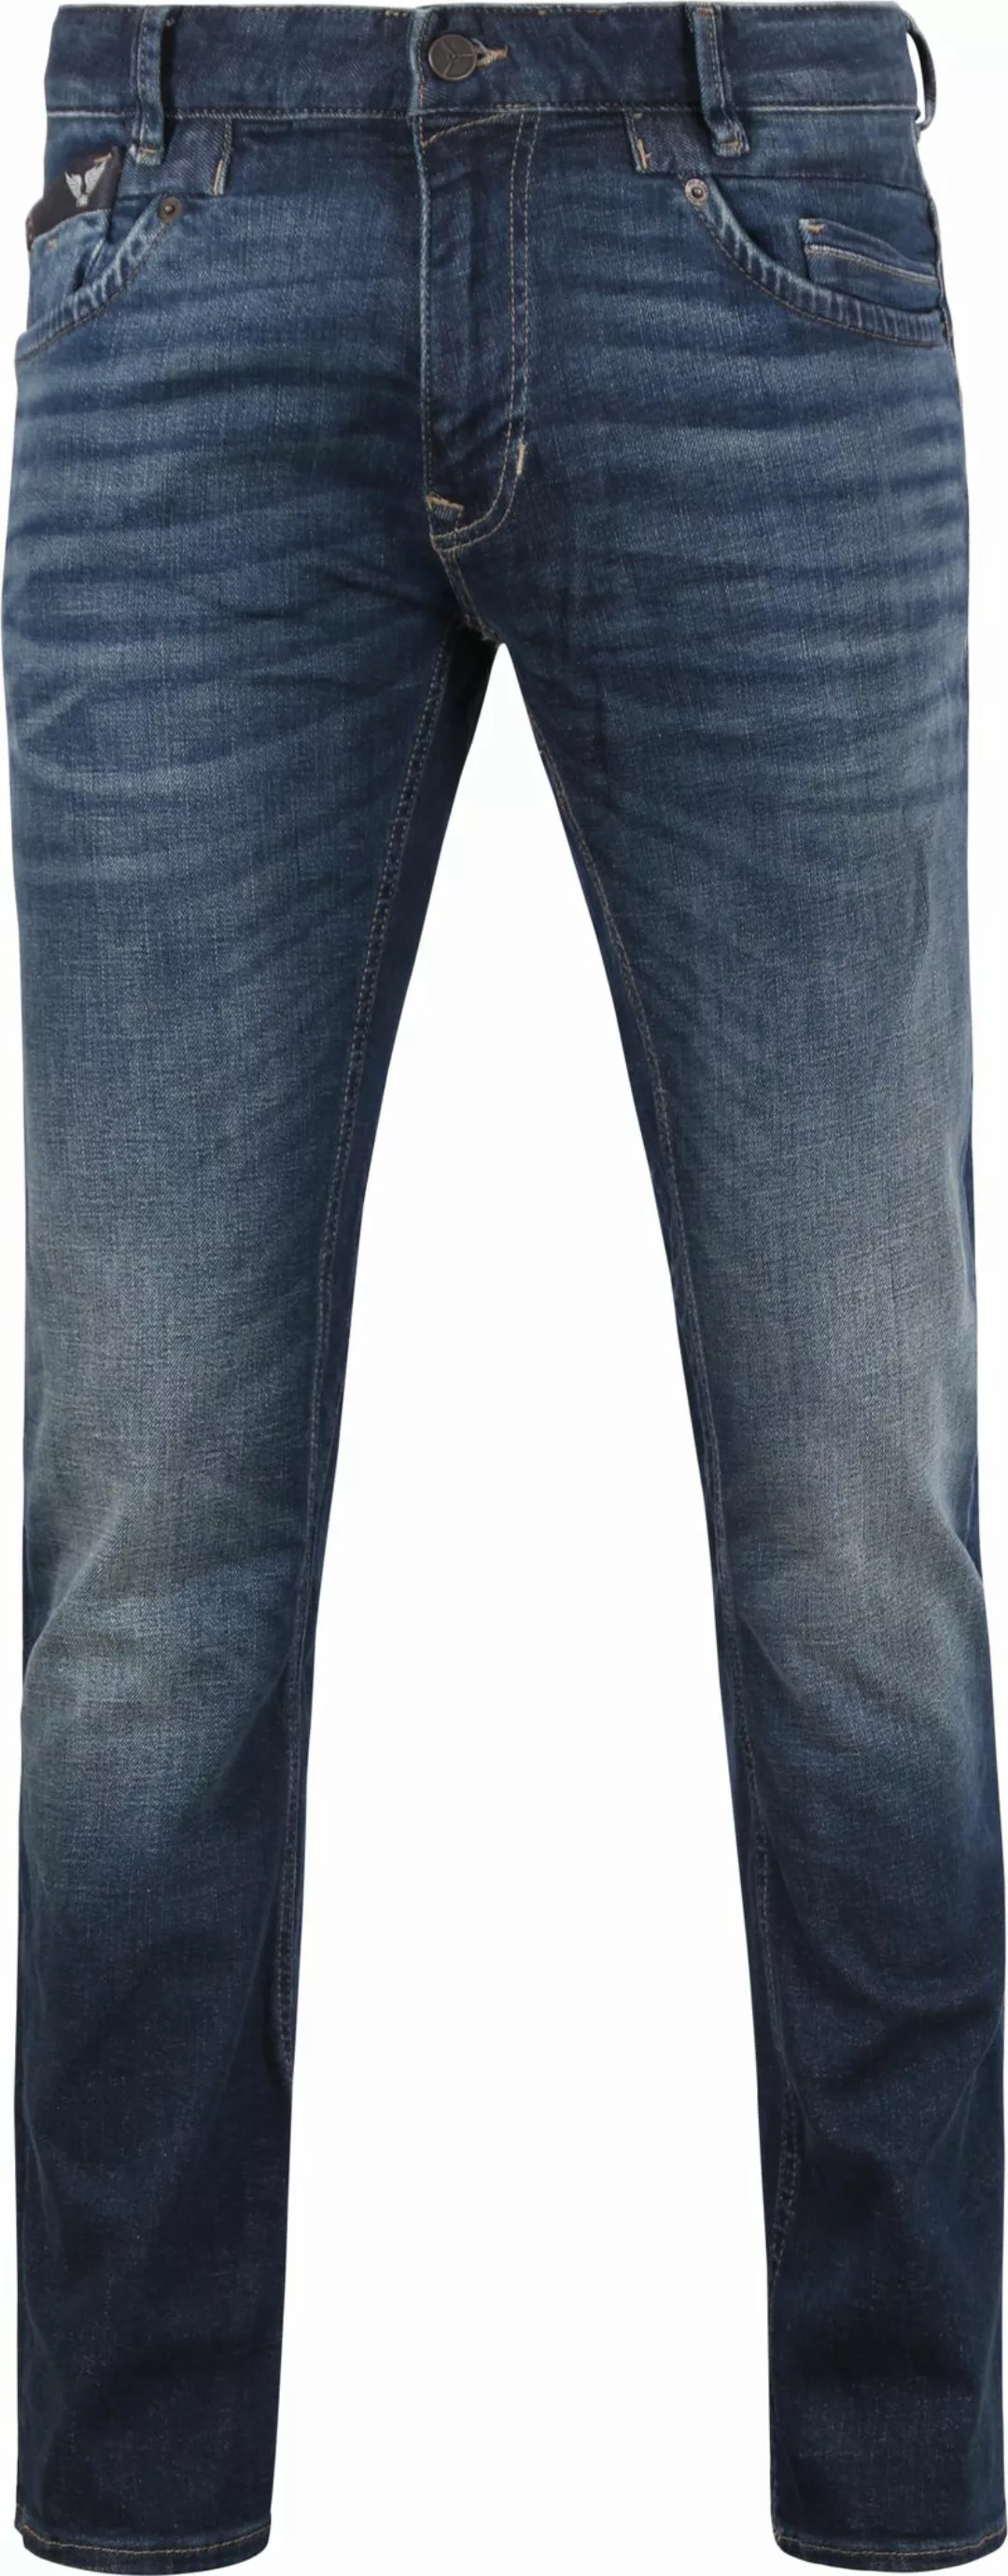 PME Legend Commander 3.0 Jeans Blau DBF - Größe W 33 - L 32 günstig online kaufen